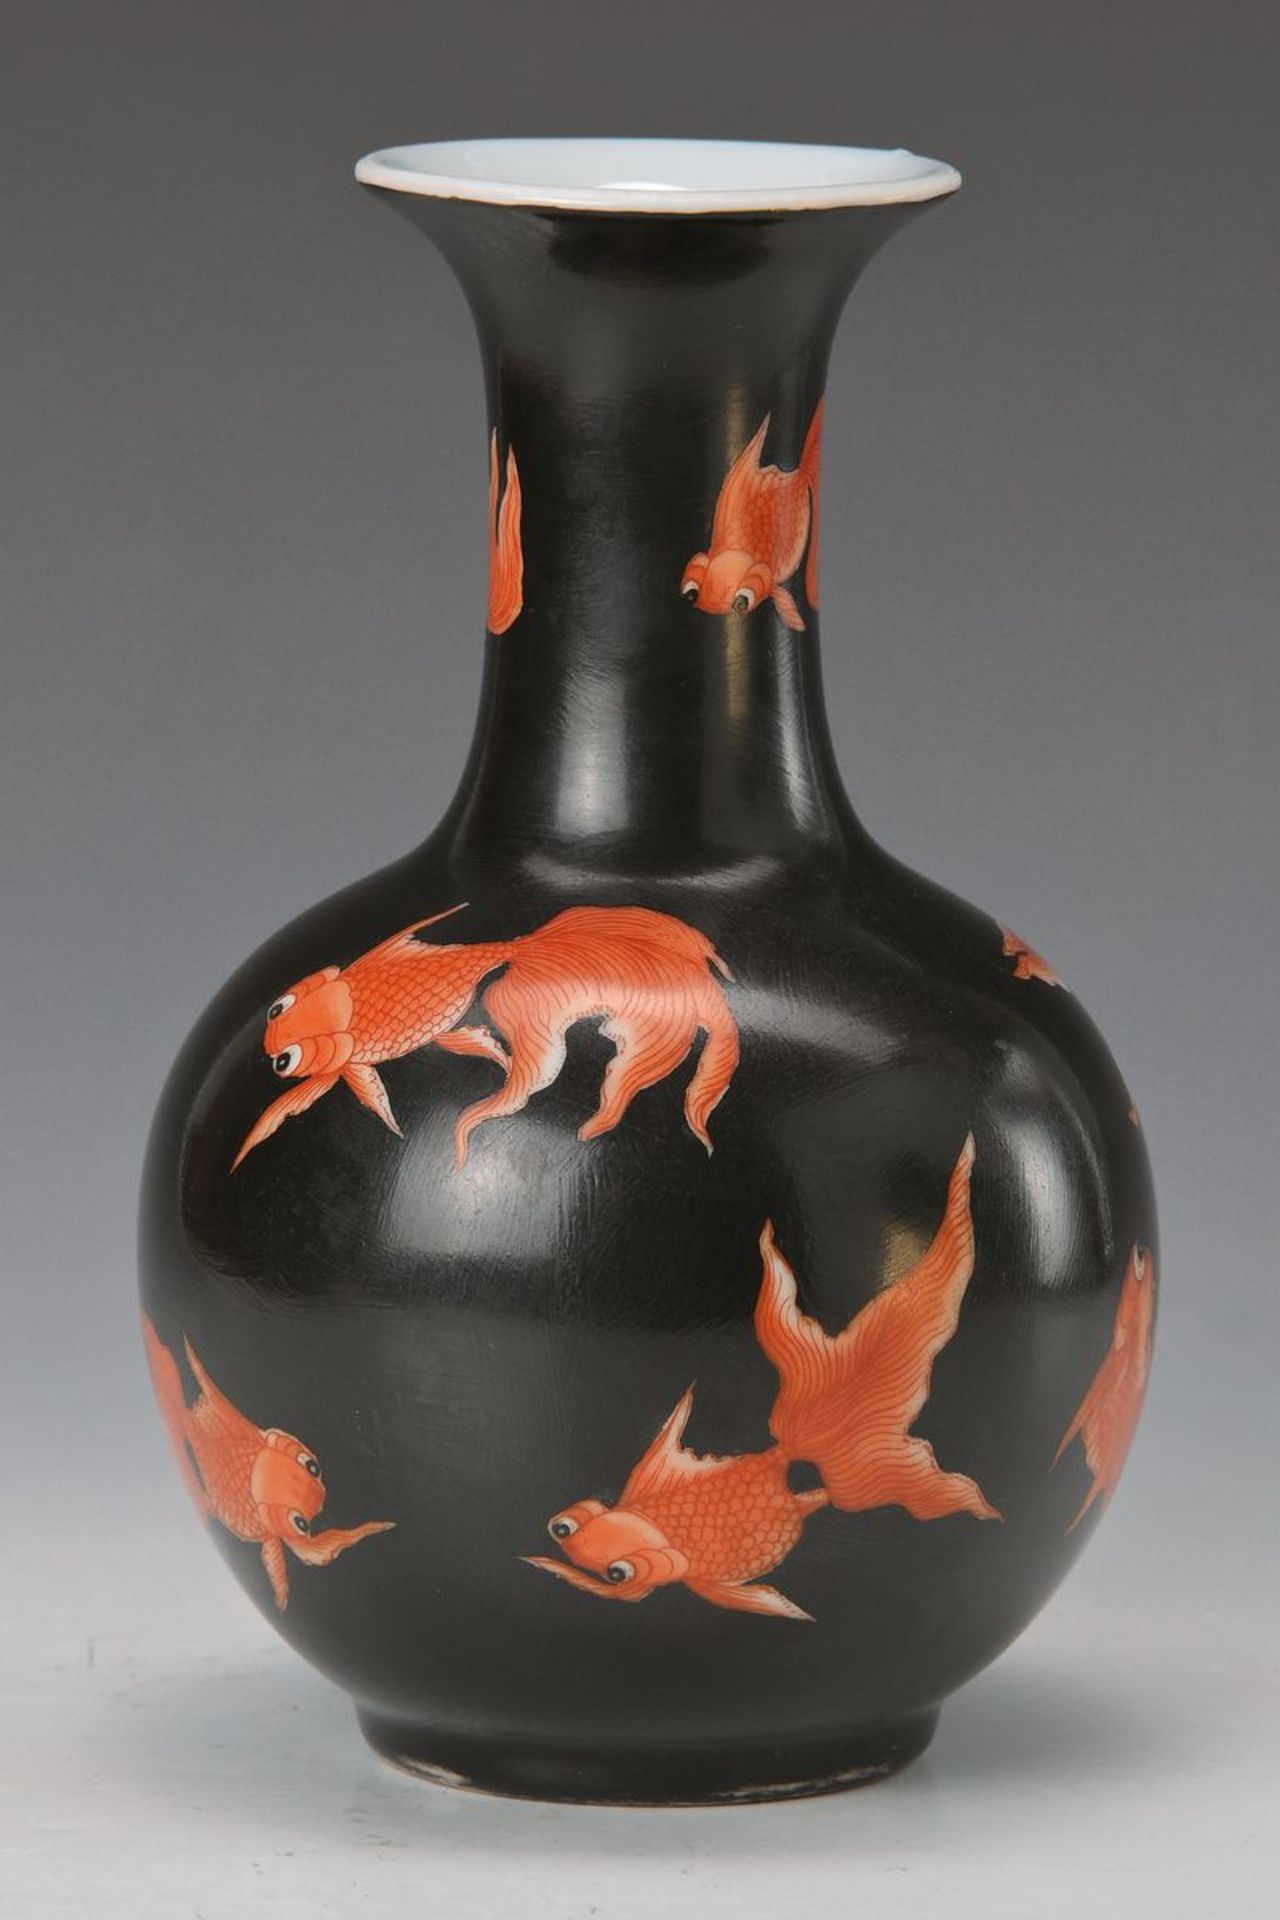 Vase, China, nach Vorbild von Jiaqing, leicht gräulich-bläuliches Porzellan, schwarzgrundig mit